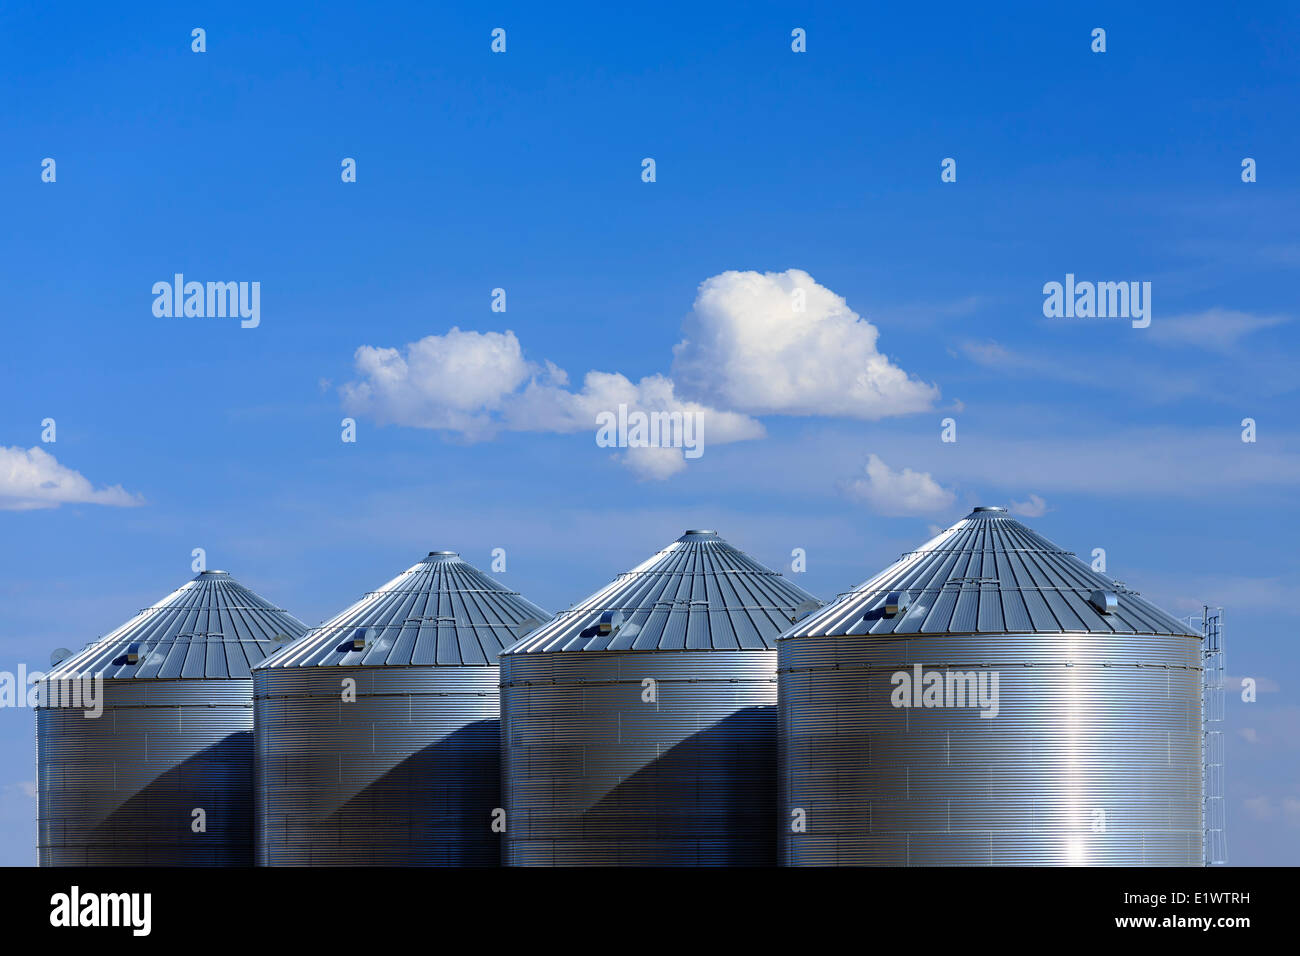 Les silos de stockage de céréales, près de Lethbridge, Alberta, Canada Banque D'Images